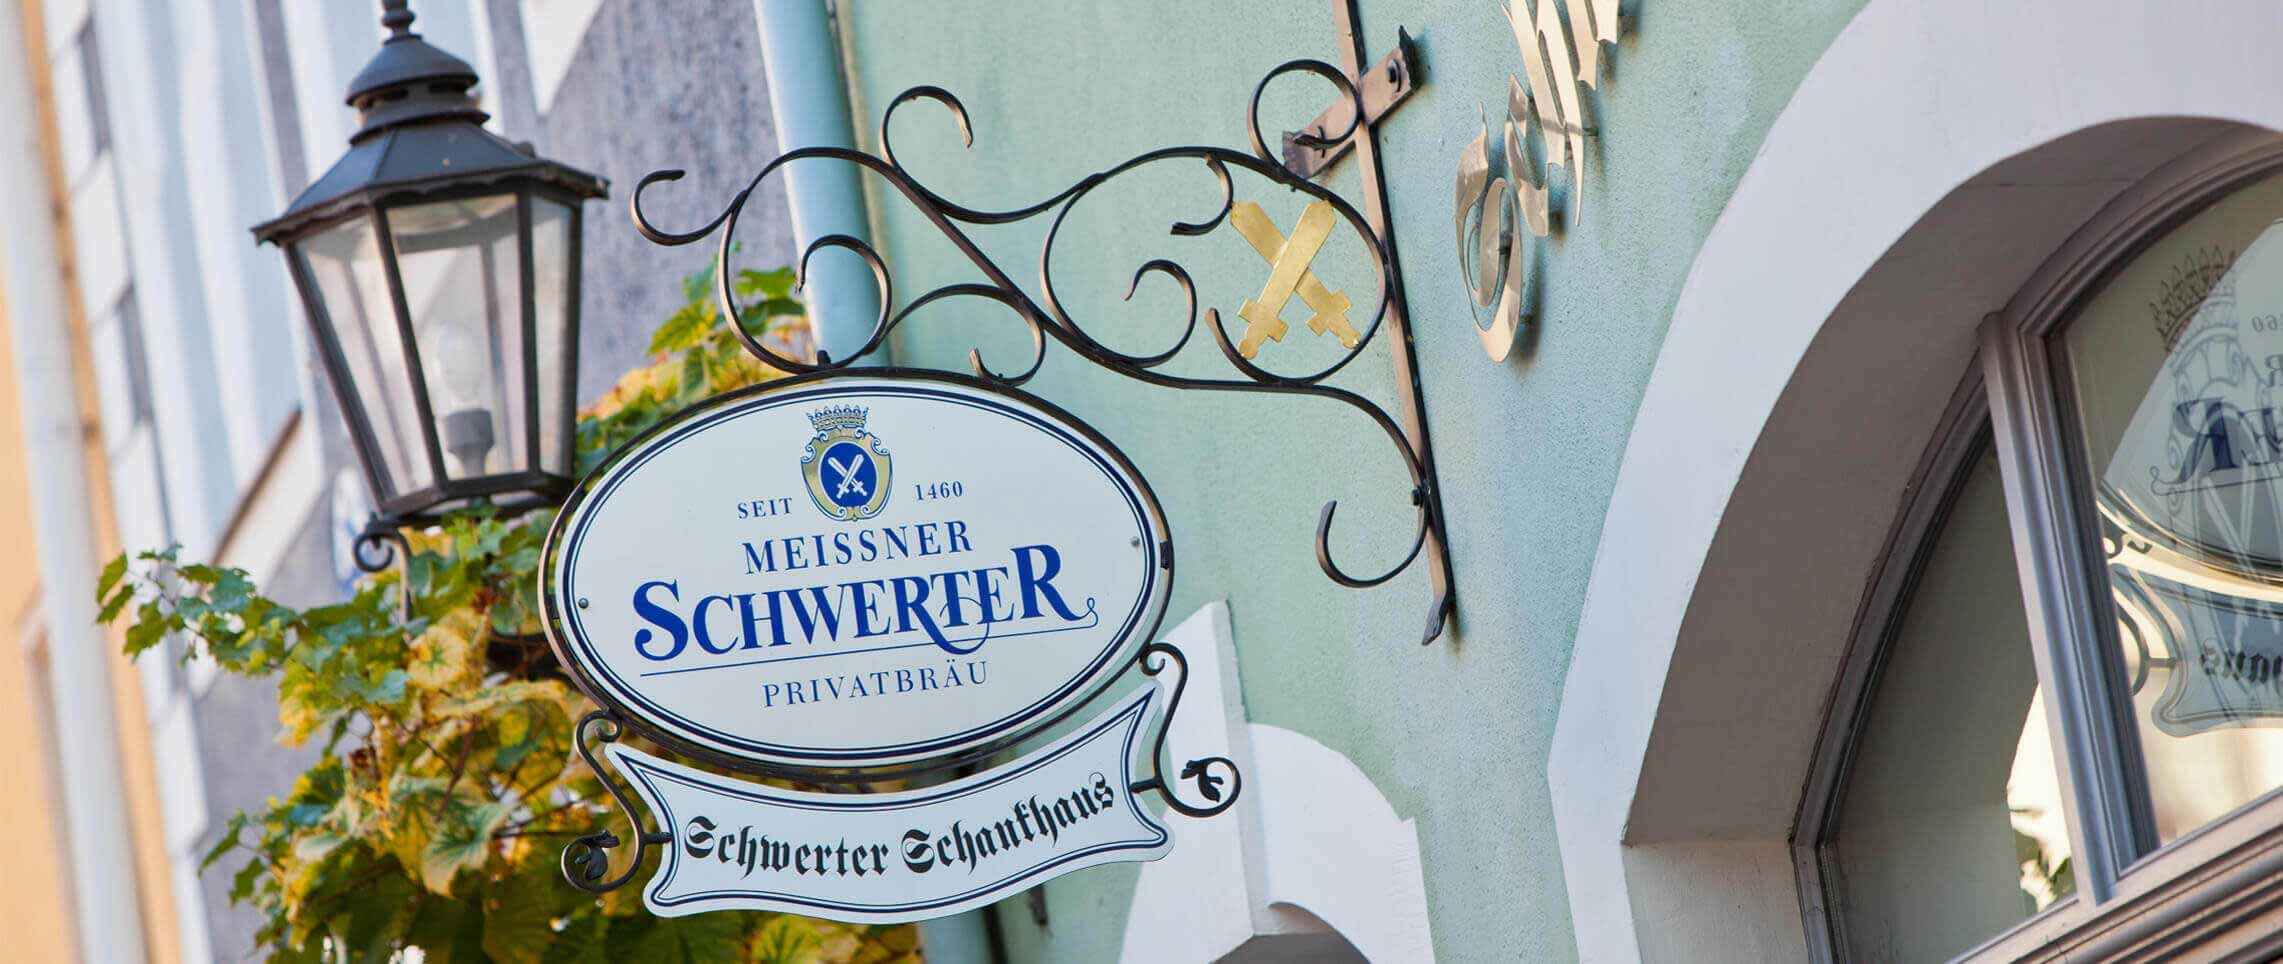 Herzlich Willkommen im Schwerter Schankhaus & Hotel! Besuchen und genießen Sie original Meißner Bierkultur im besonderen Ambiente.